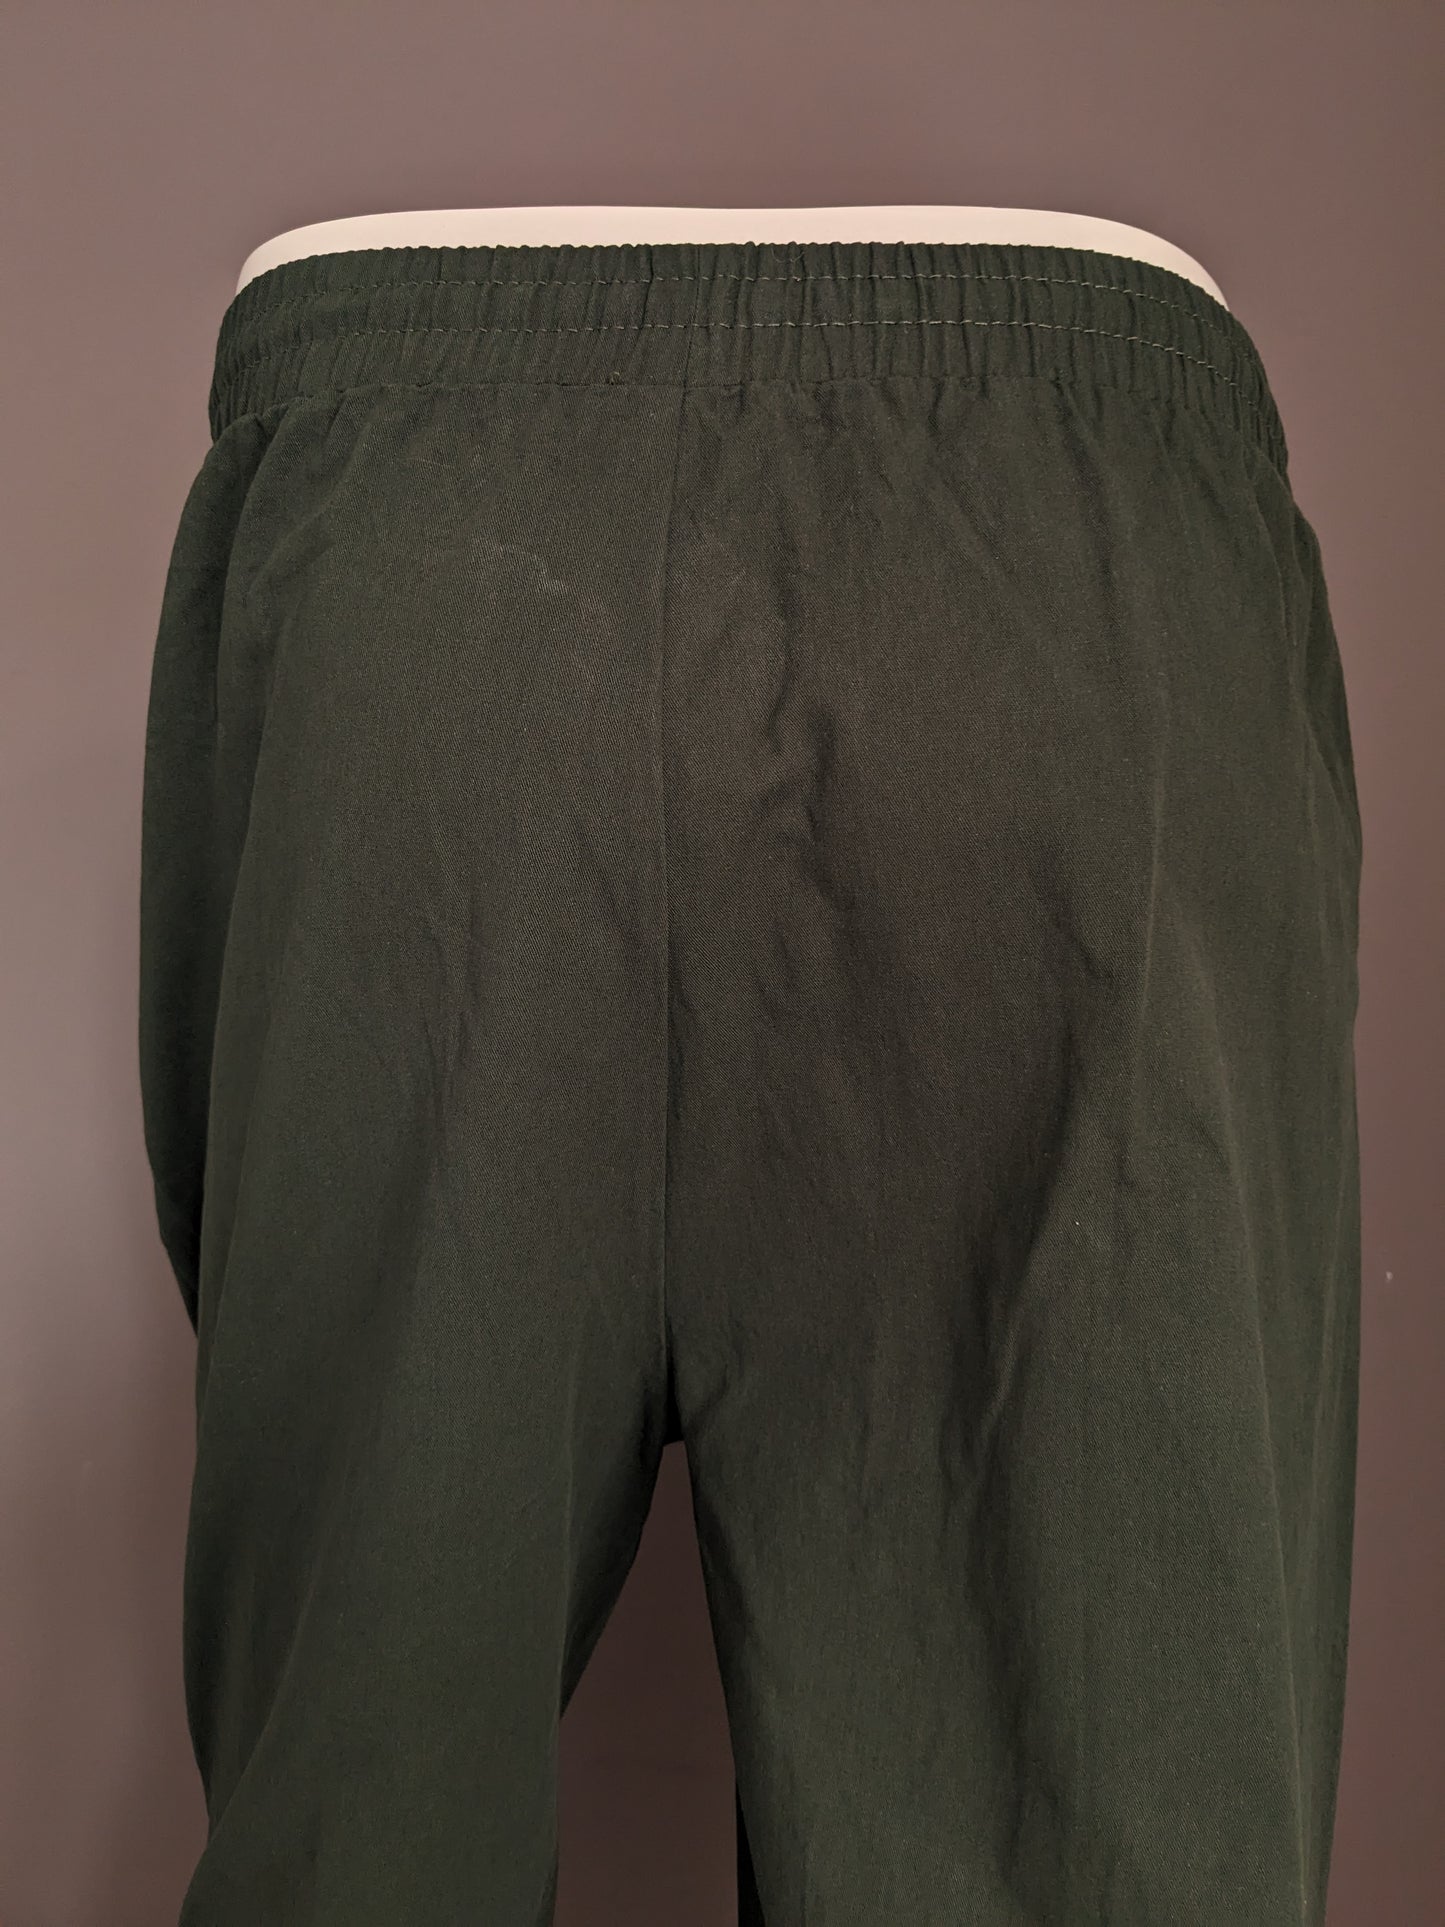 Pantalones casuales sin marca con banda elástica. Verde color. Tamaño